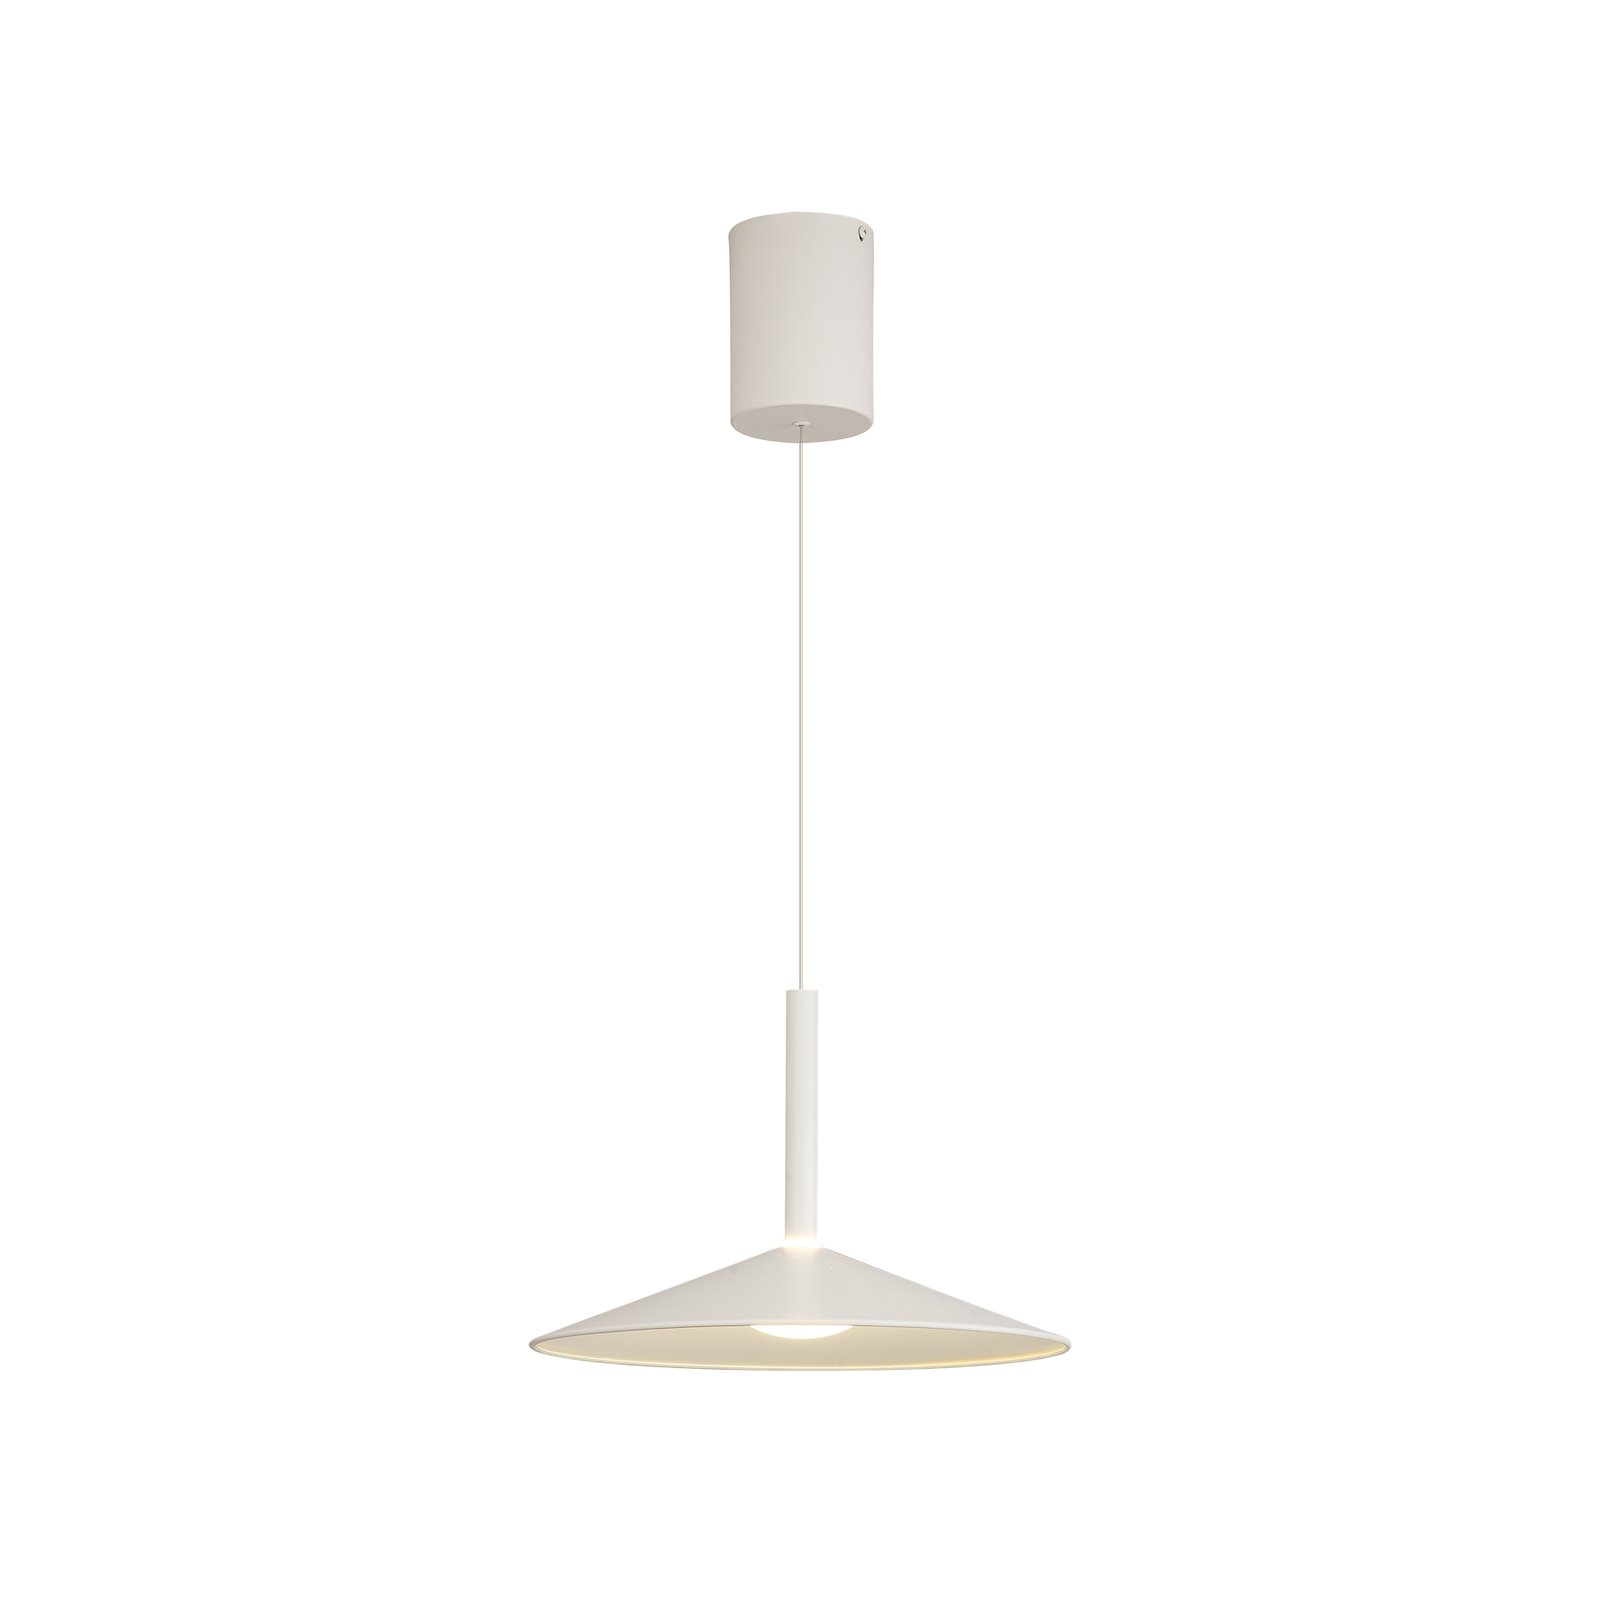 Calice hanglamp, wit, Ø 32 cm, in hoogte verstelbaar